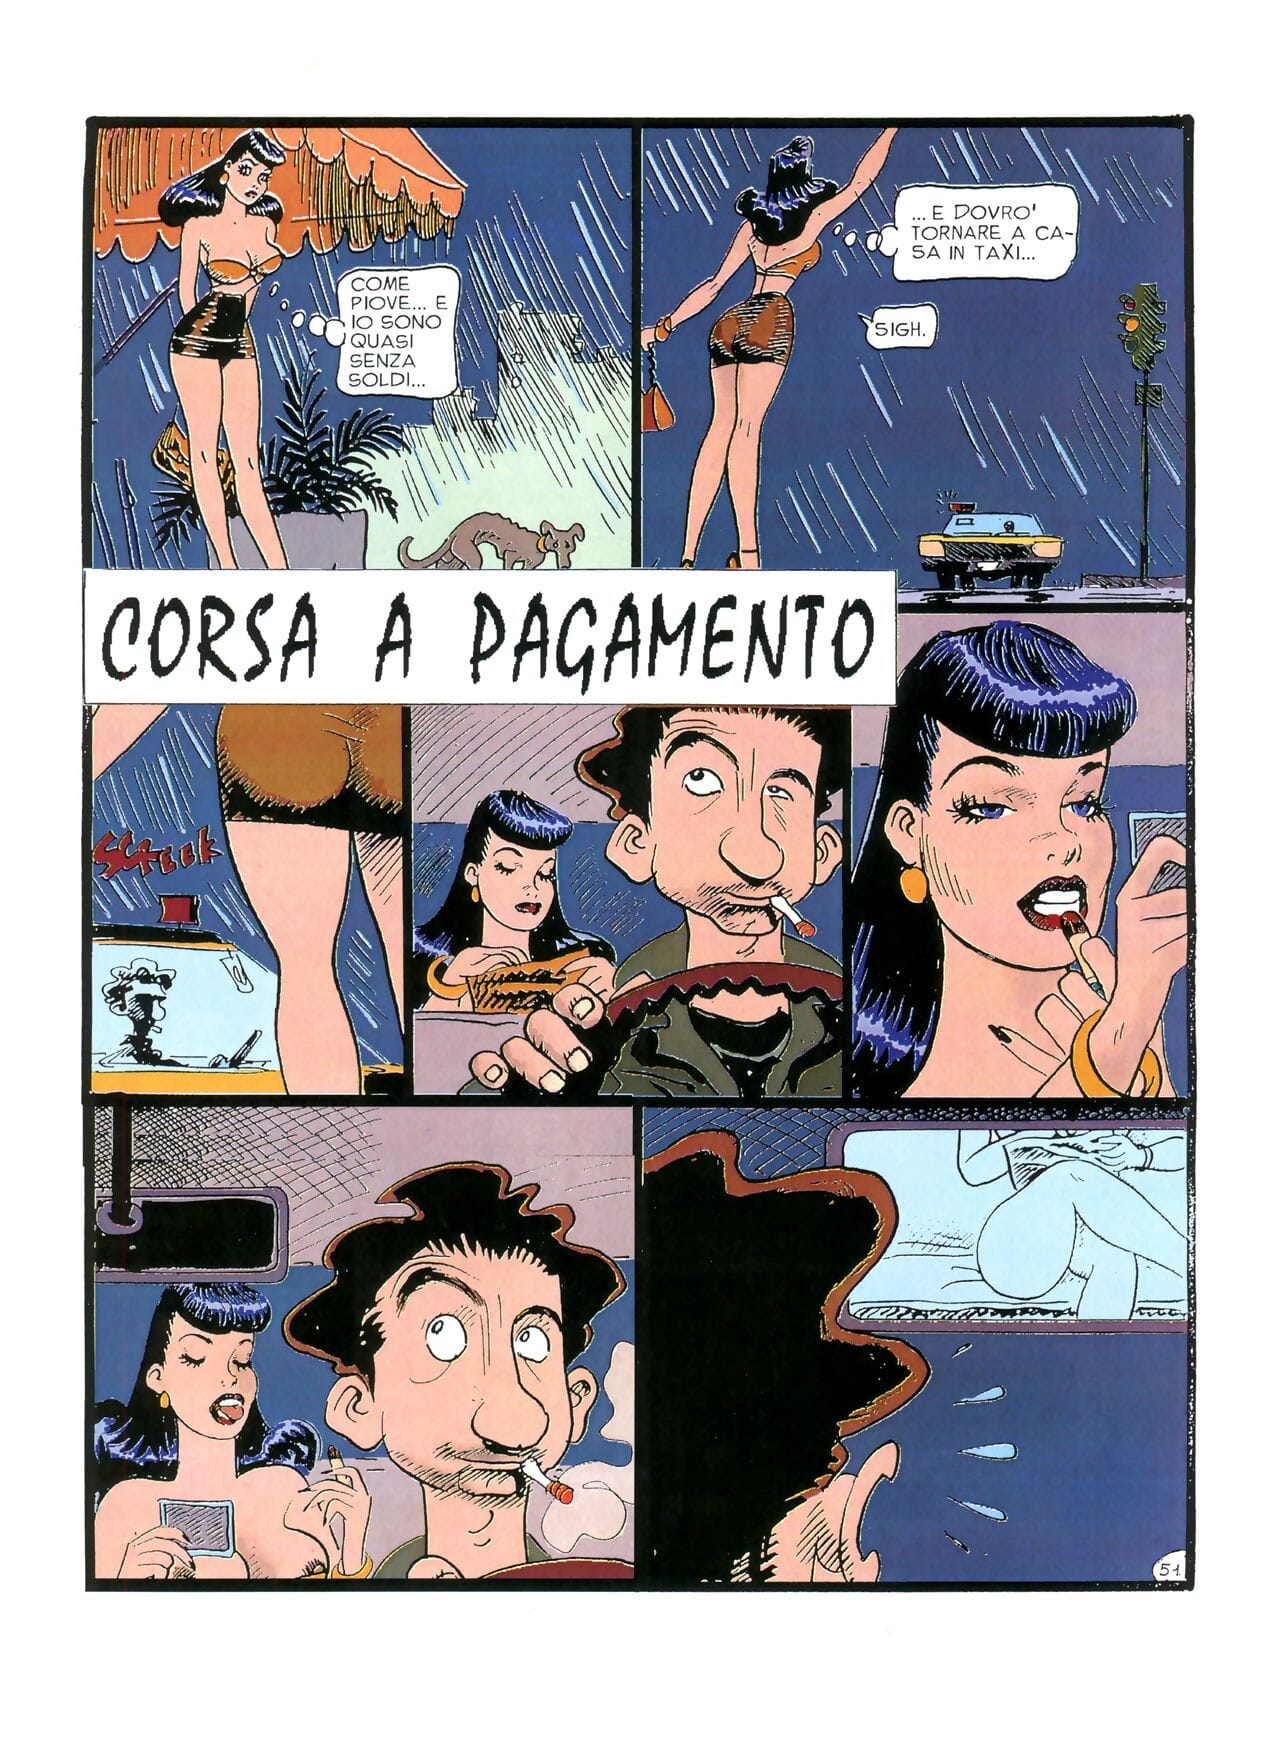 Chiara Di notte #1 parte 3 page 1